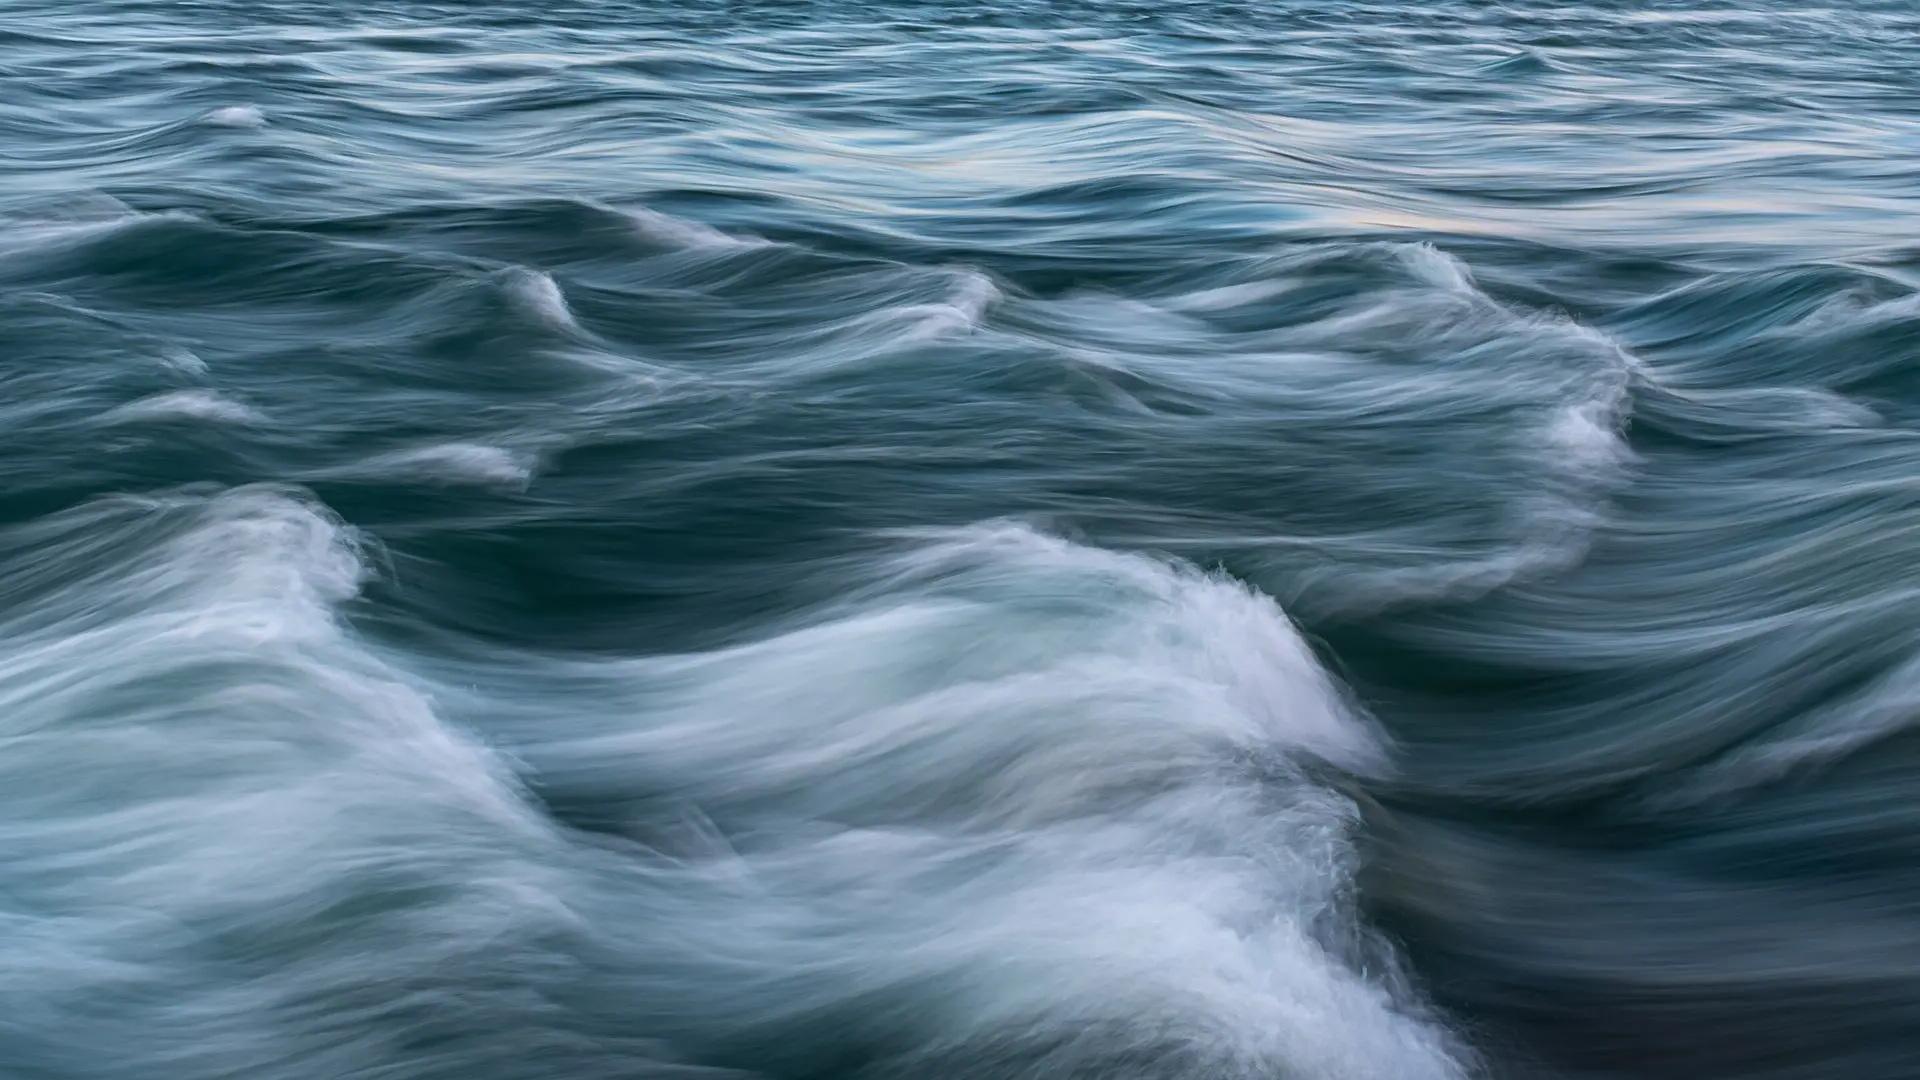 海洋变暖正在引起洋流的变化，这可能会加剧气候变化的影响, 威尼斯人博彩研究人员发现. 图片来源:Adobe Stock.